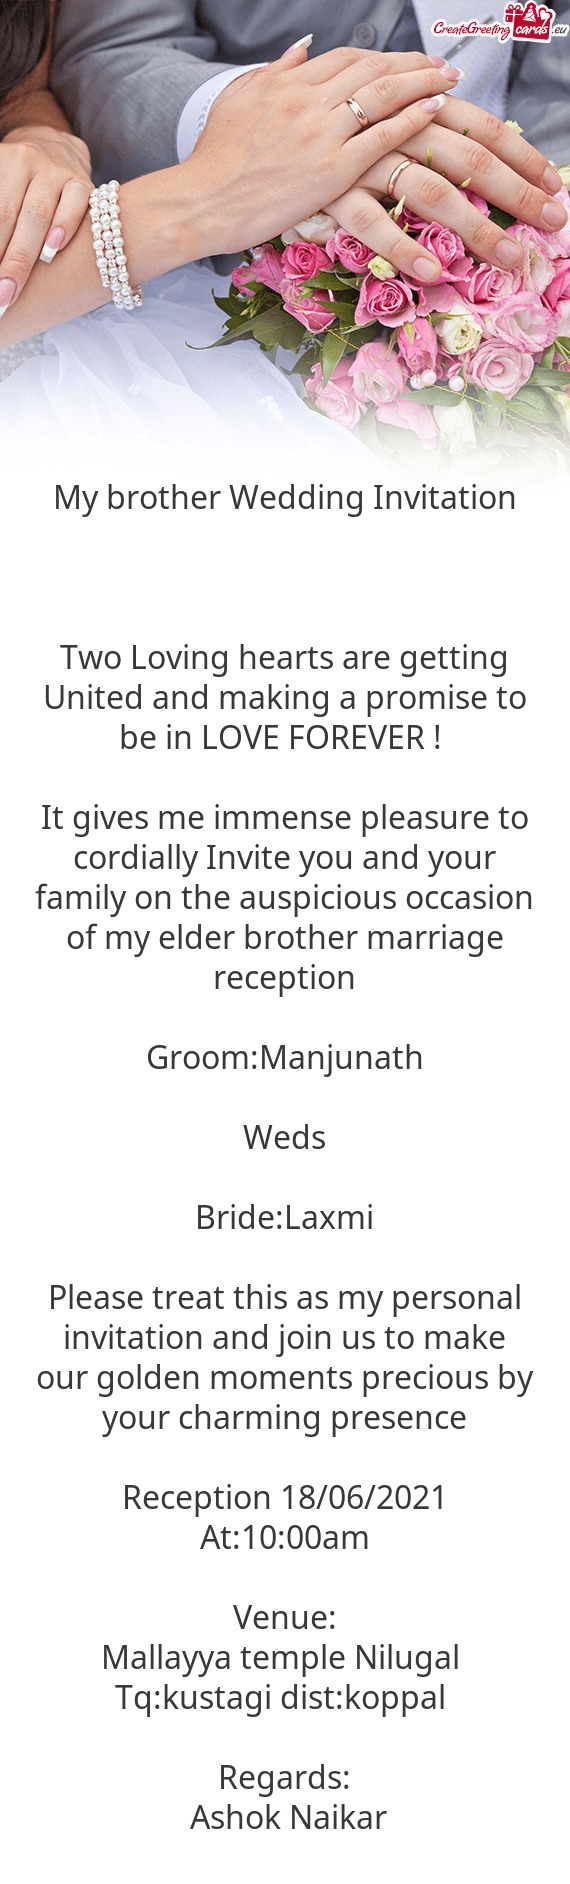 Y elder brother marriage reception